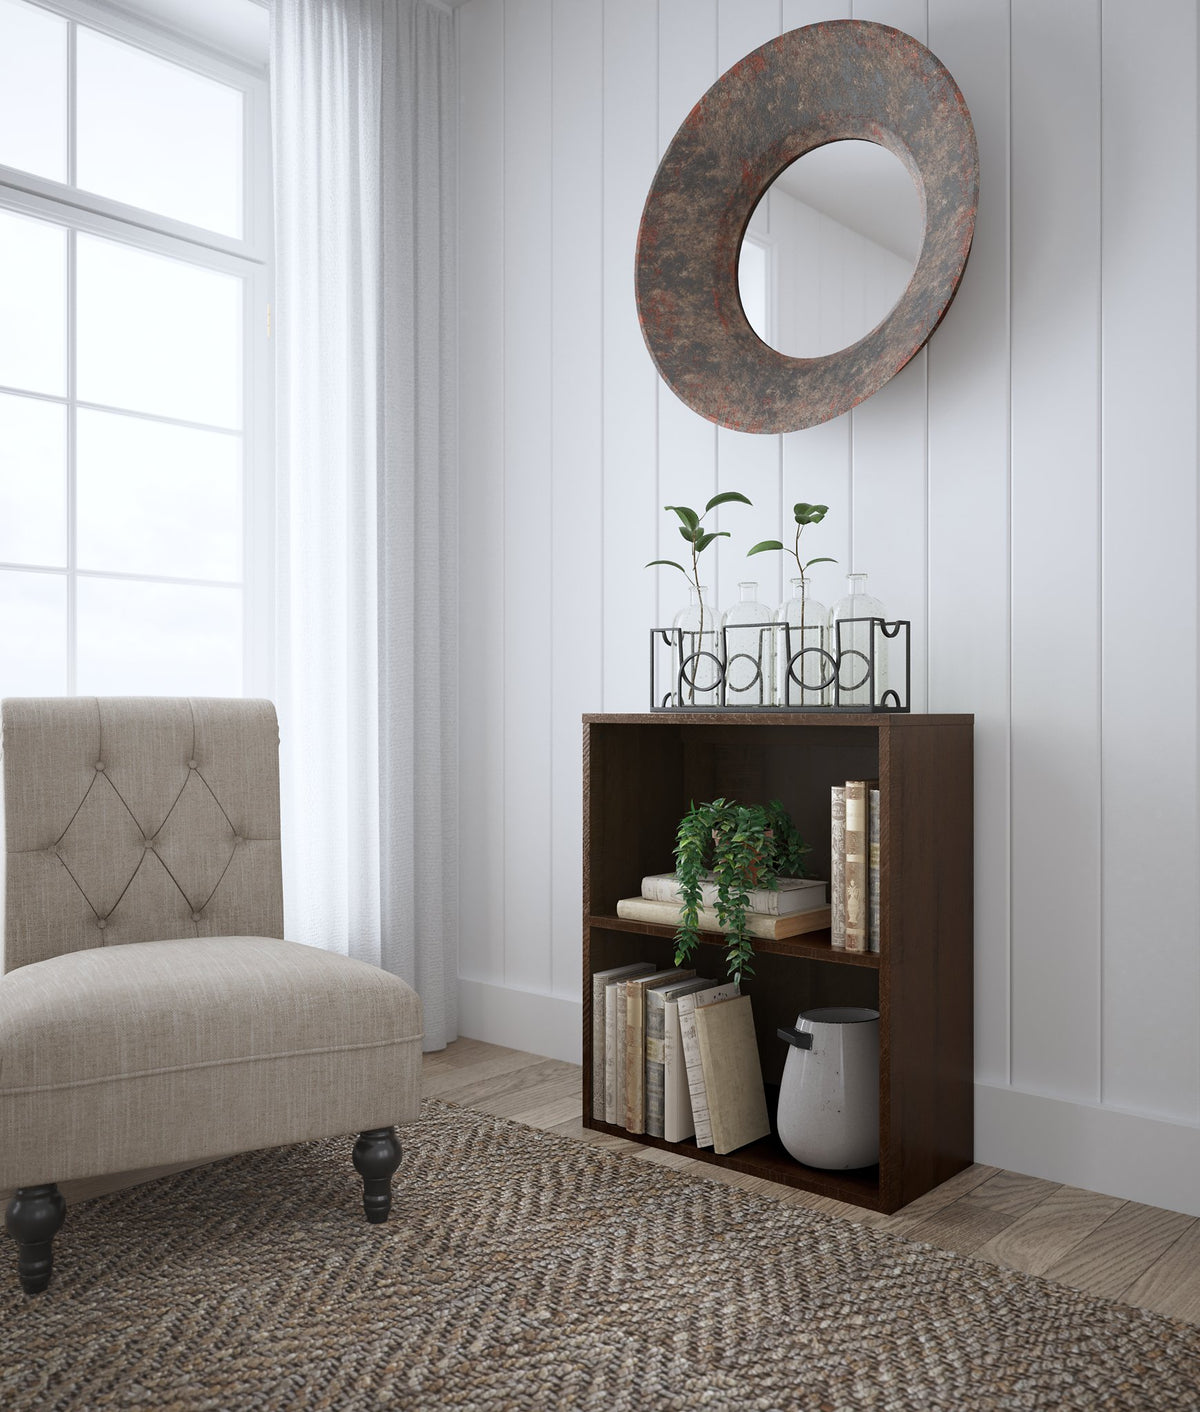 Camiburg 30" Bookcase - Half Price Furniture